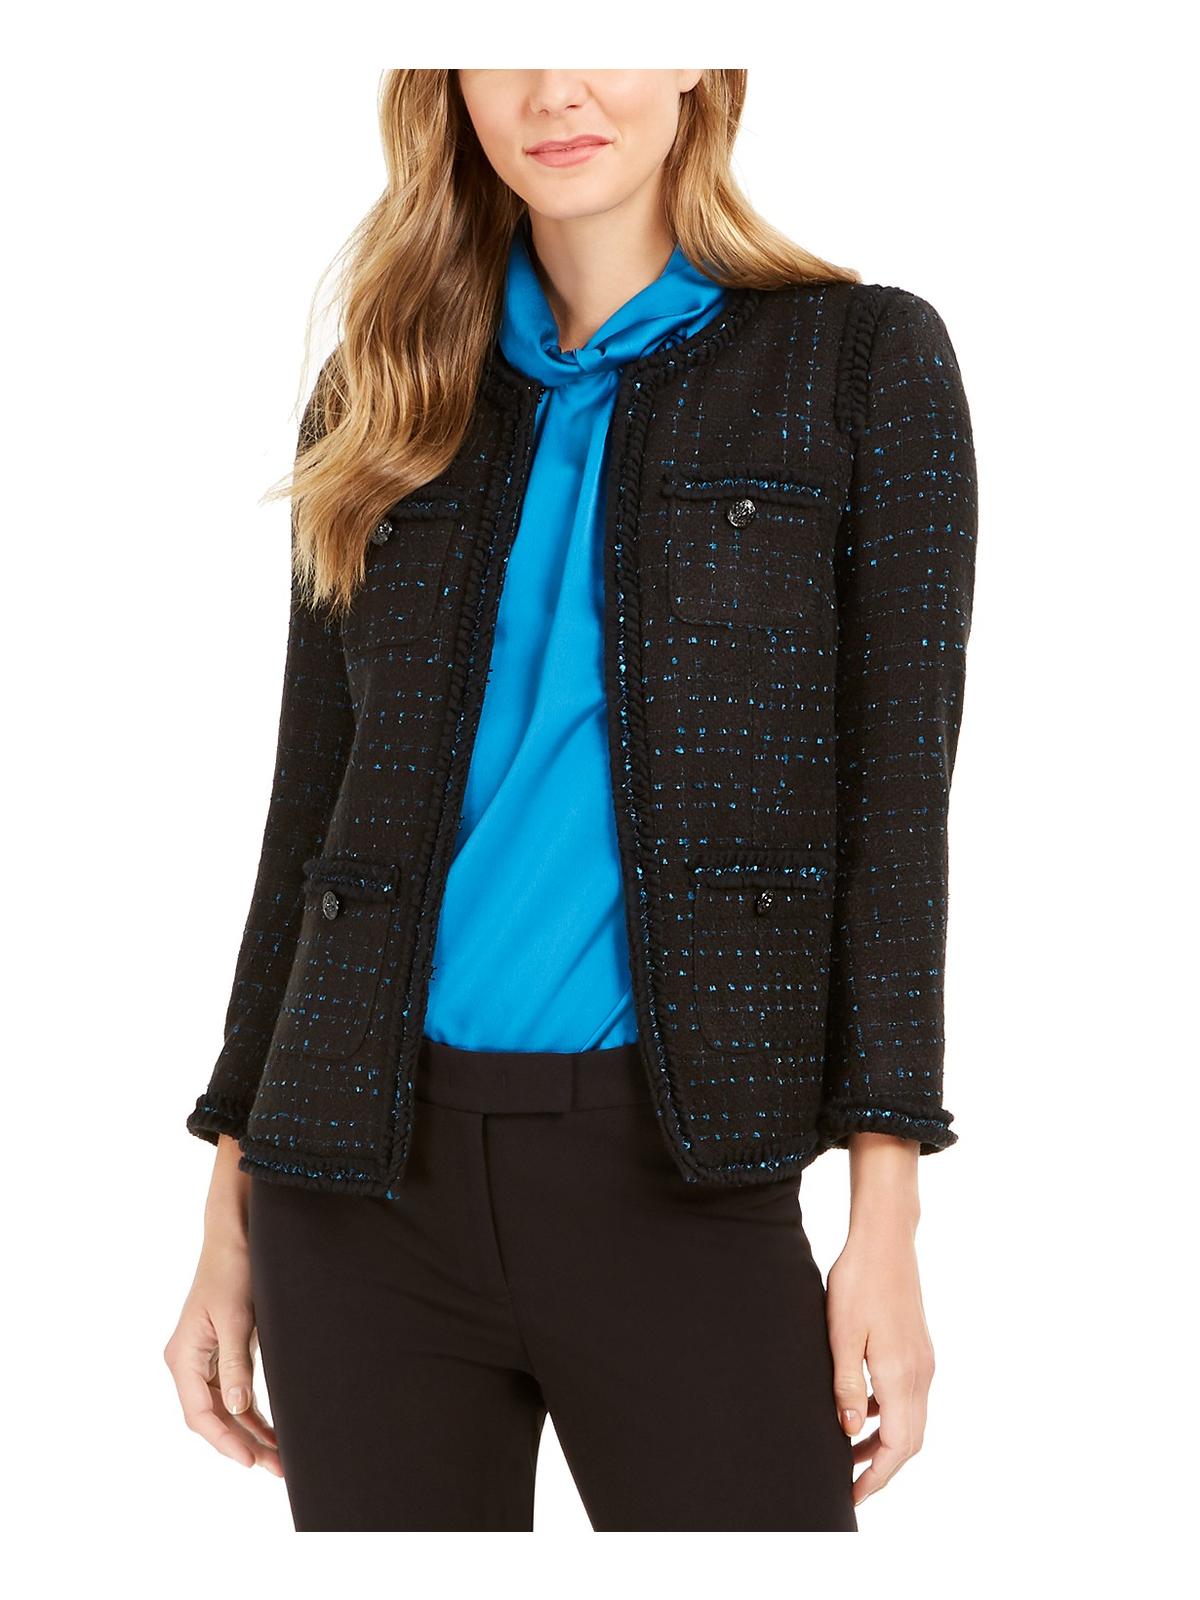 Anne Klein Womens Tweed Colorblock Suit Jacket Black 10 - image 1 of 2